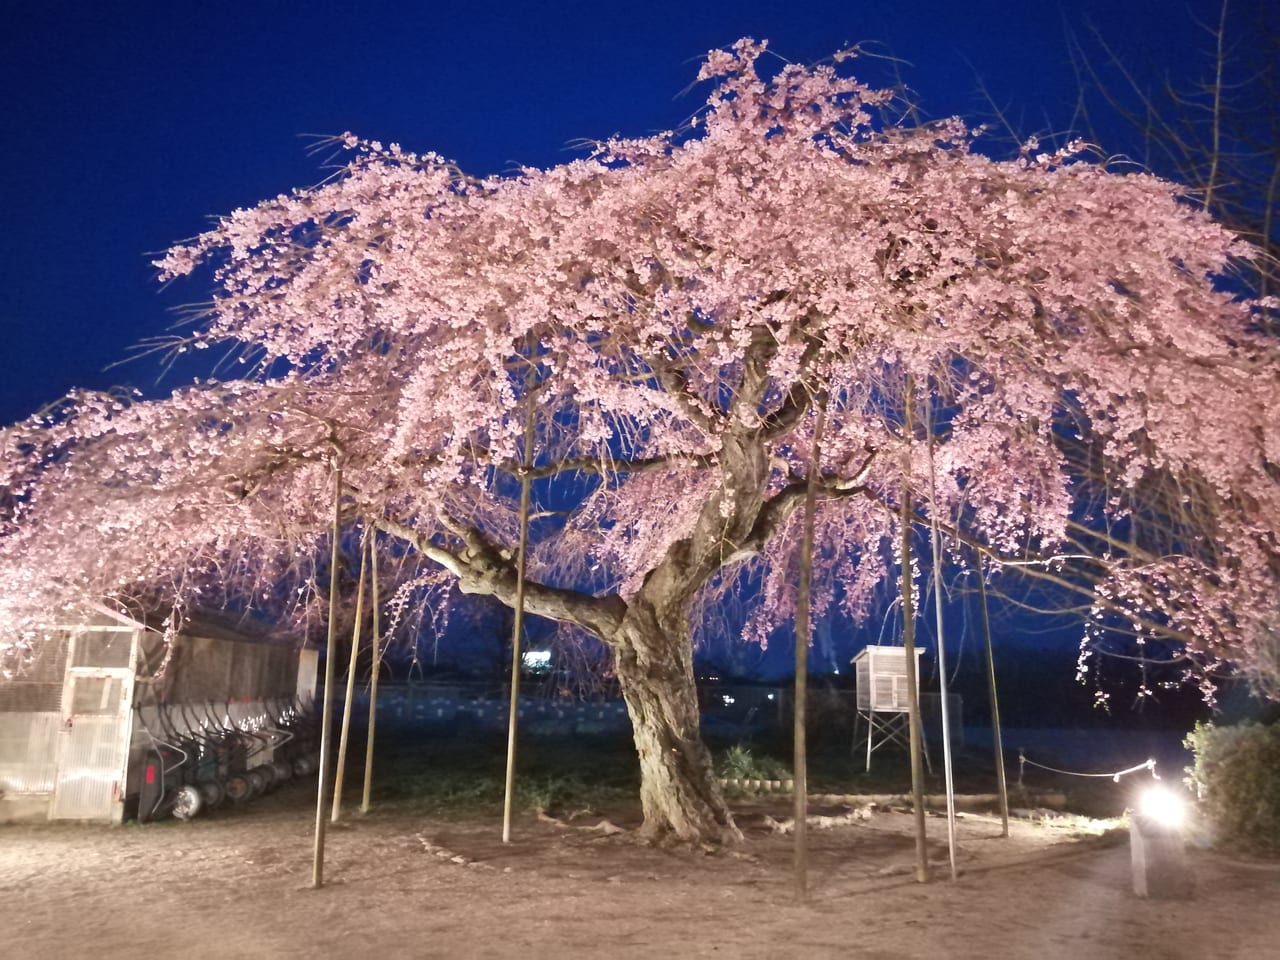 光市 光市で夜桜散歩 静かで幻想的なさくらに魅せられます 号外net 周南市 下松市 光市